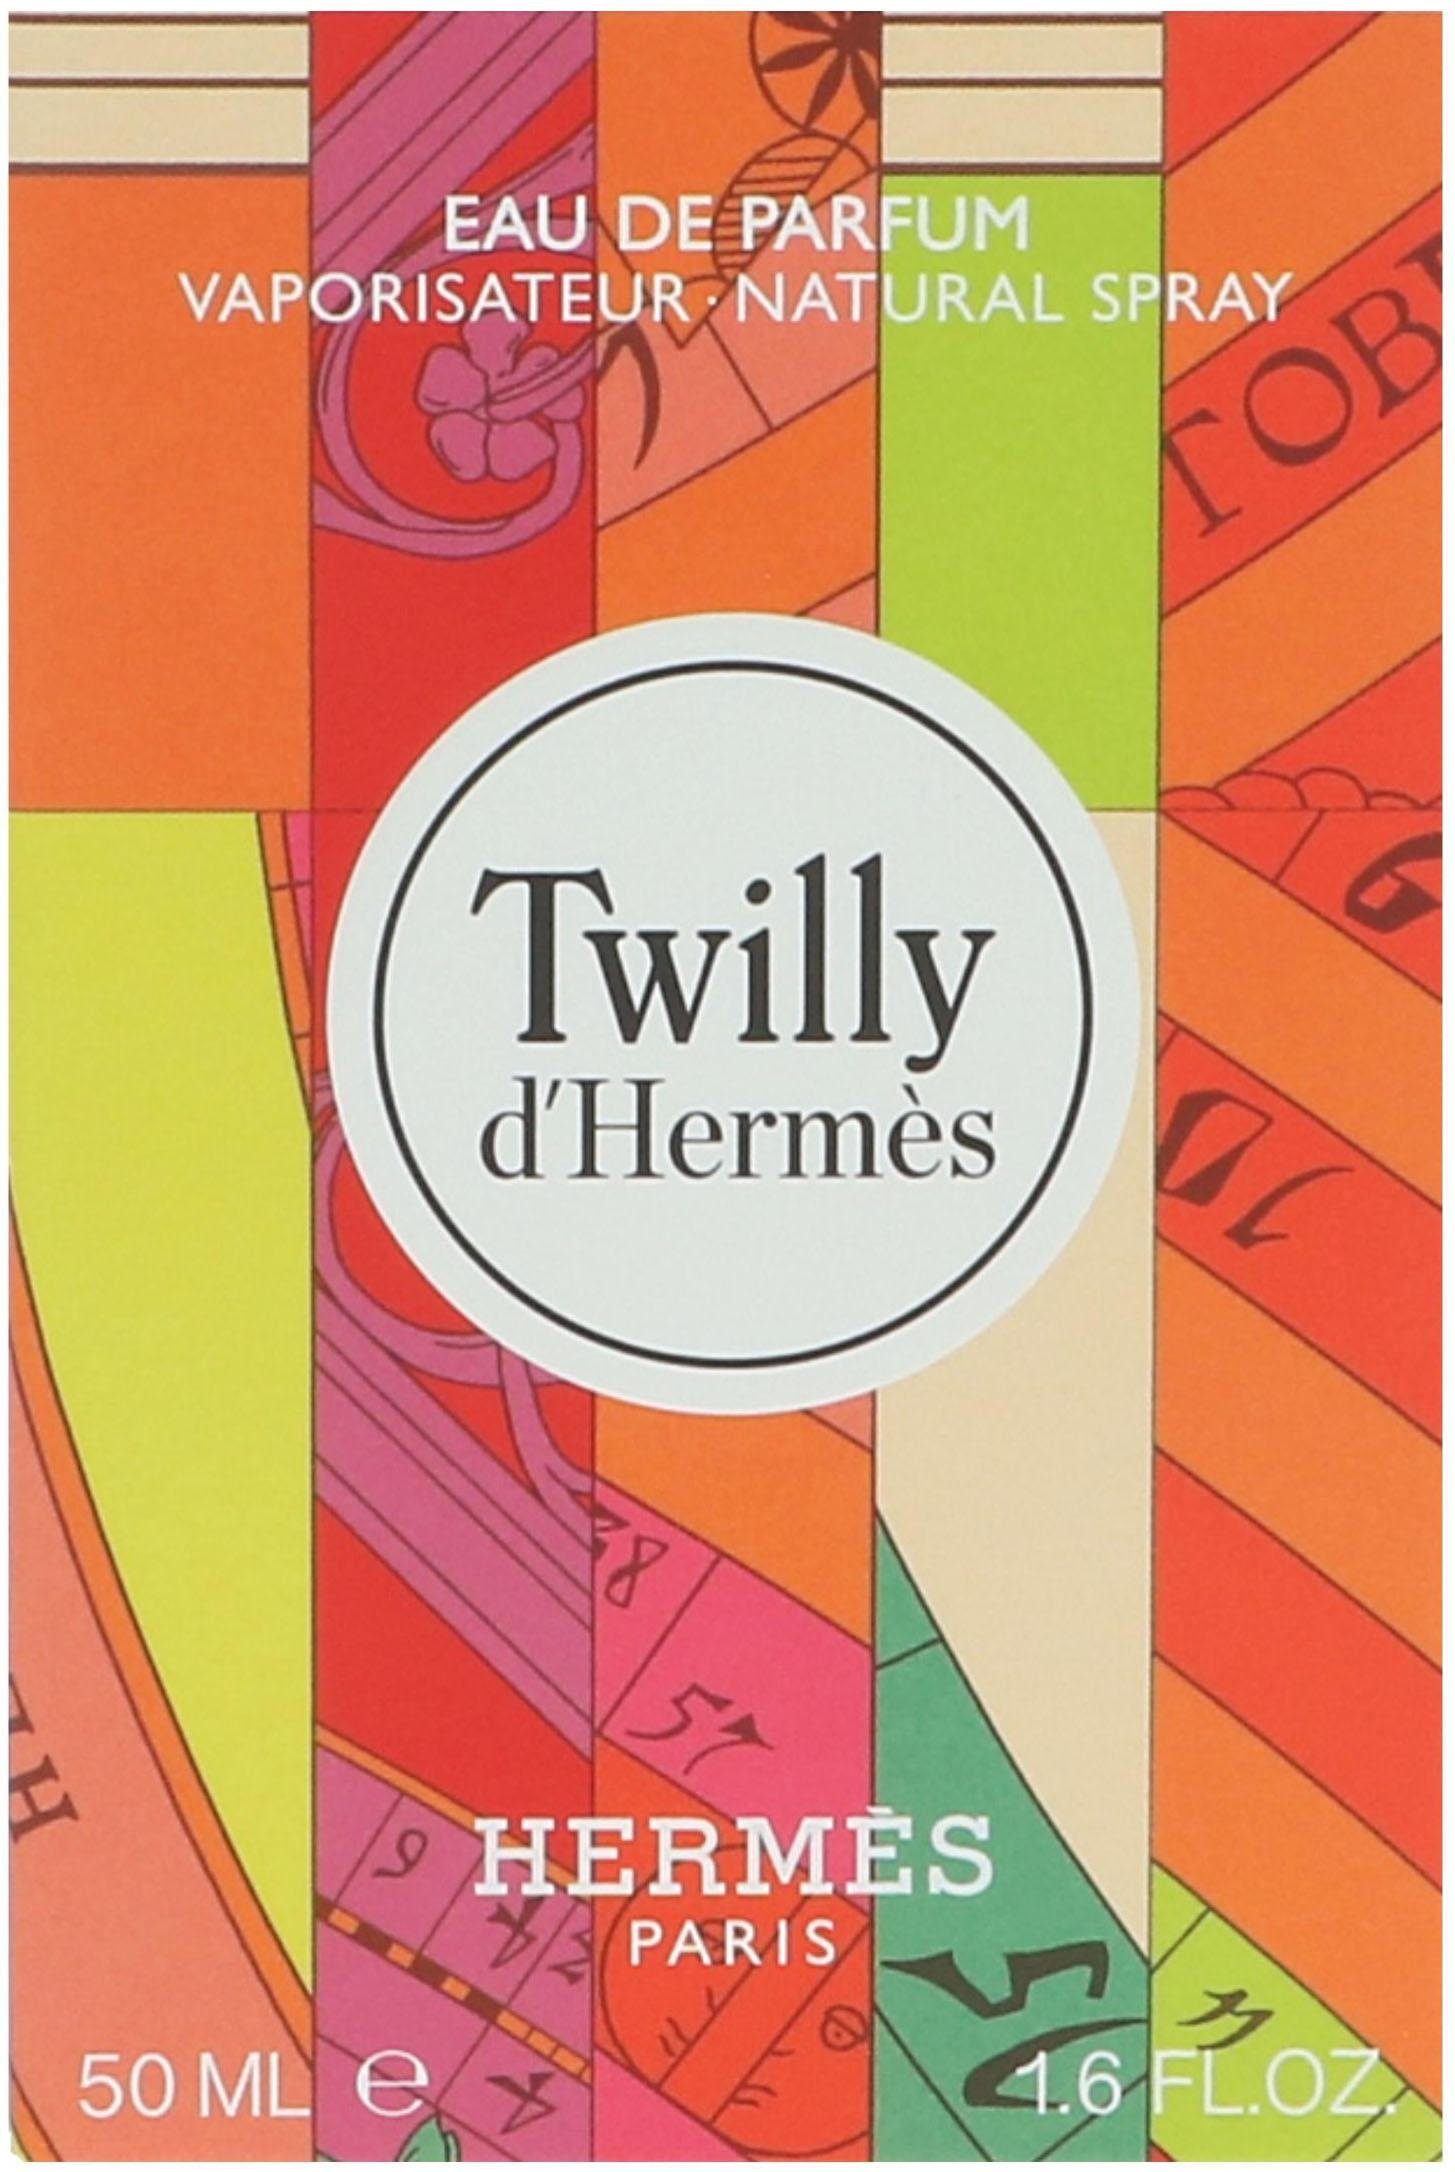 HERMÈS Eau de d'Hermes Twilly Parfum